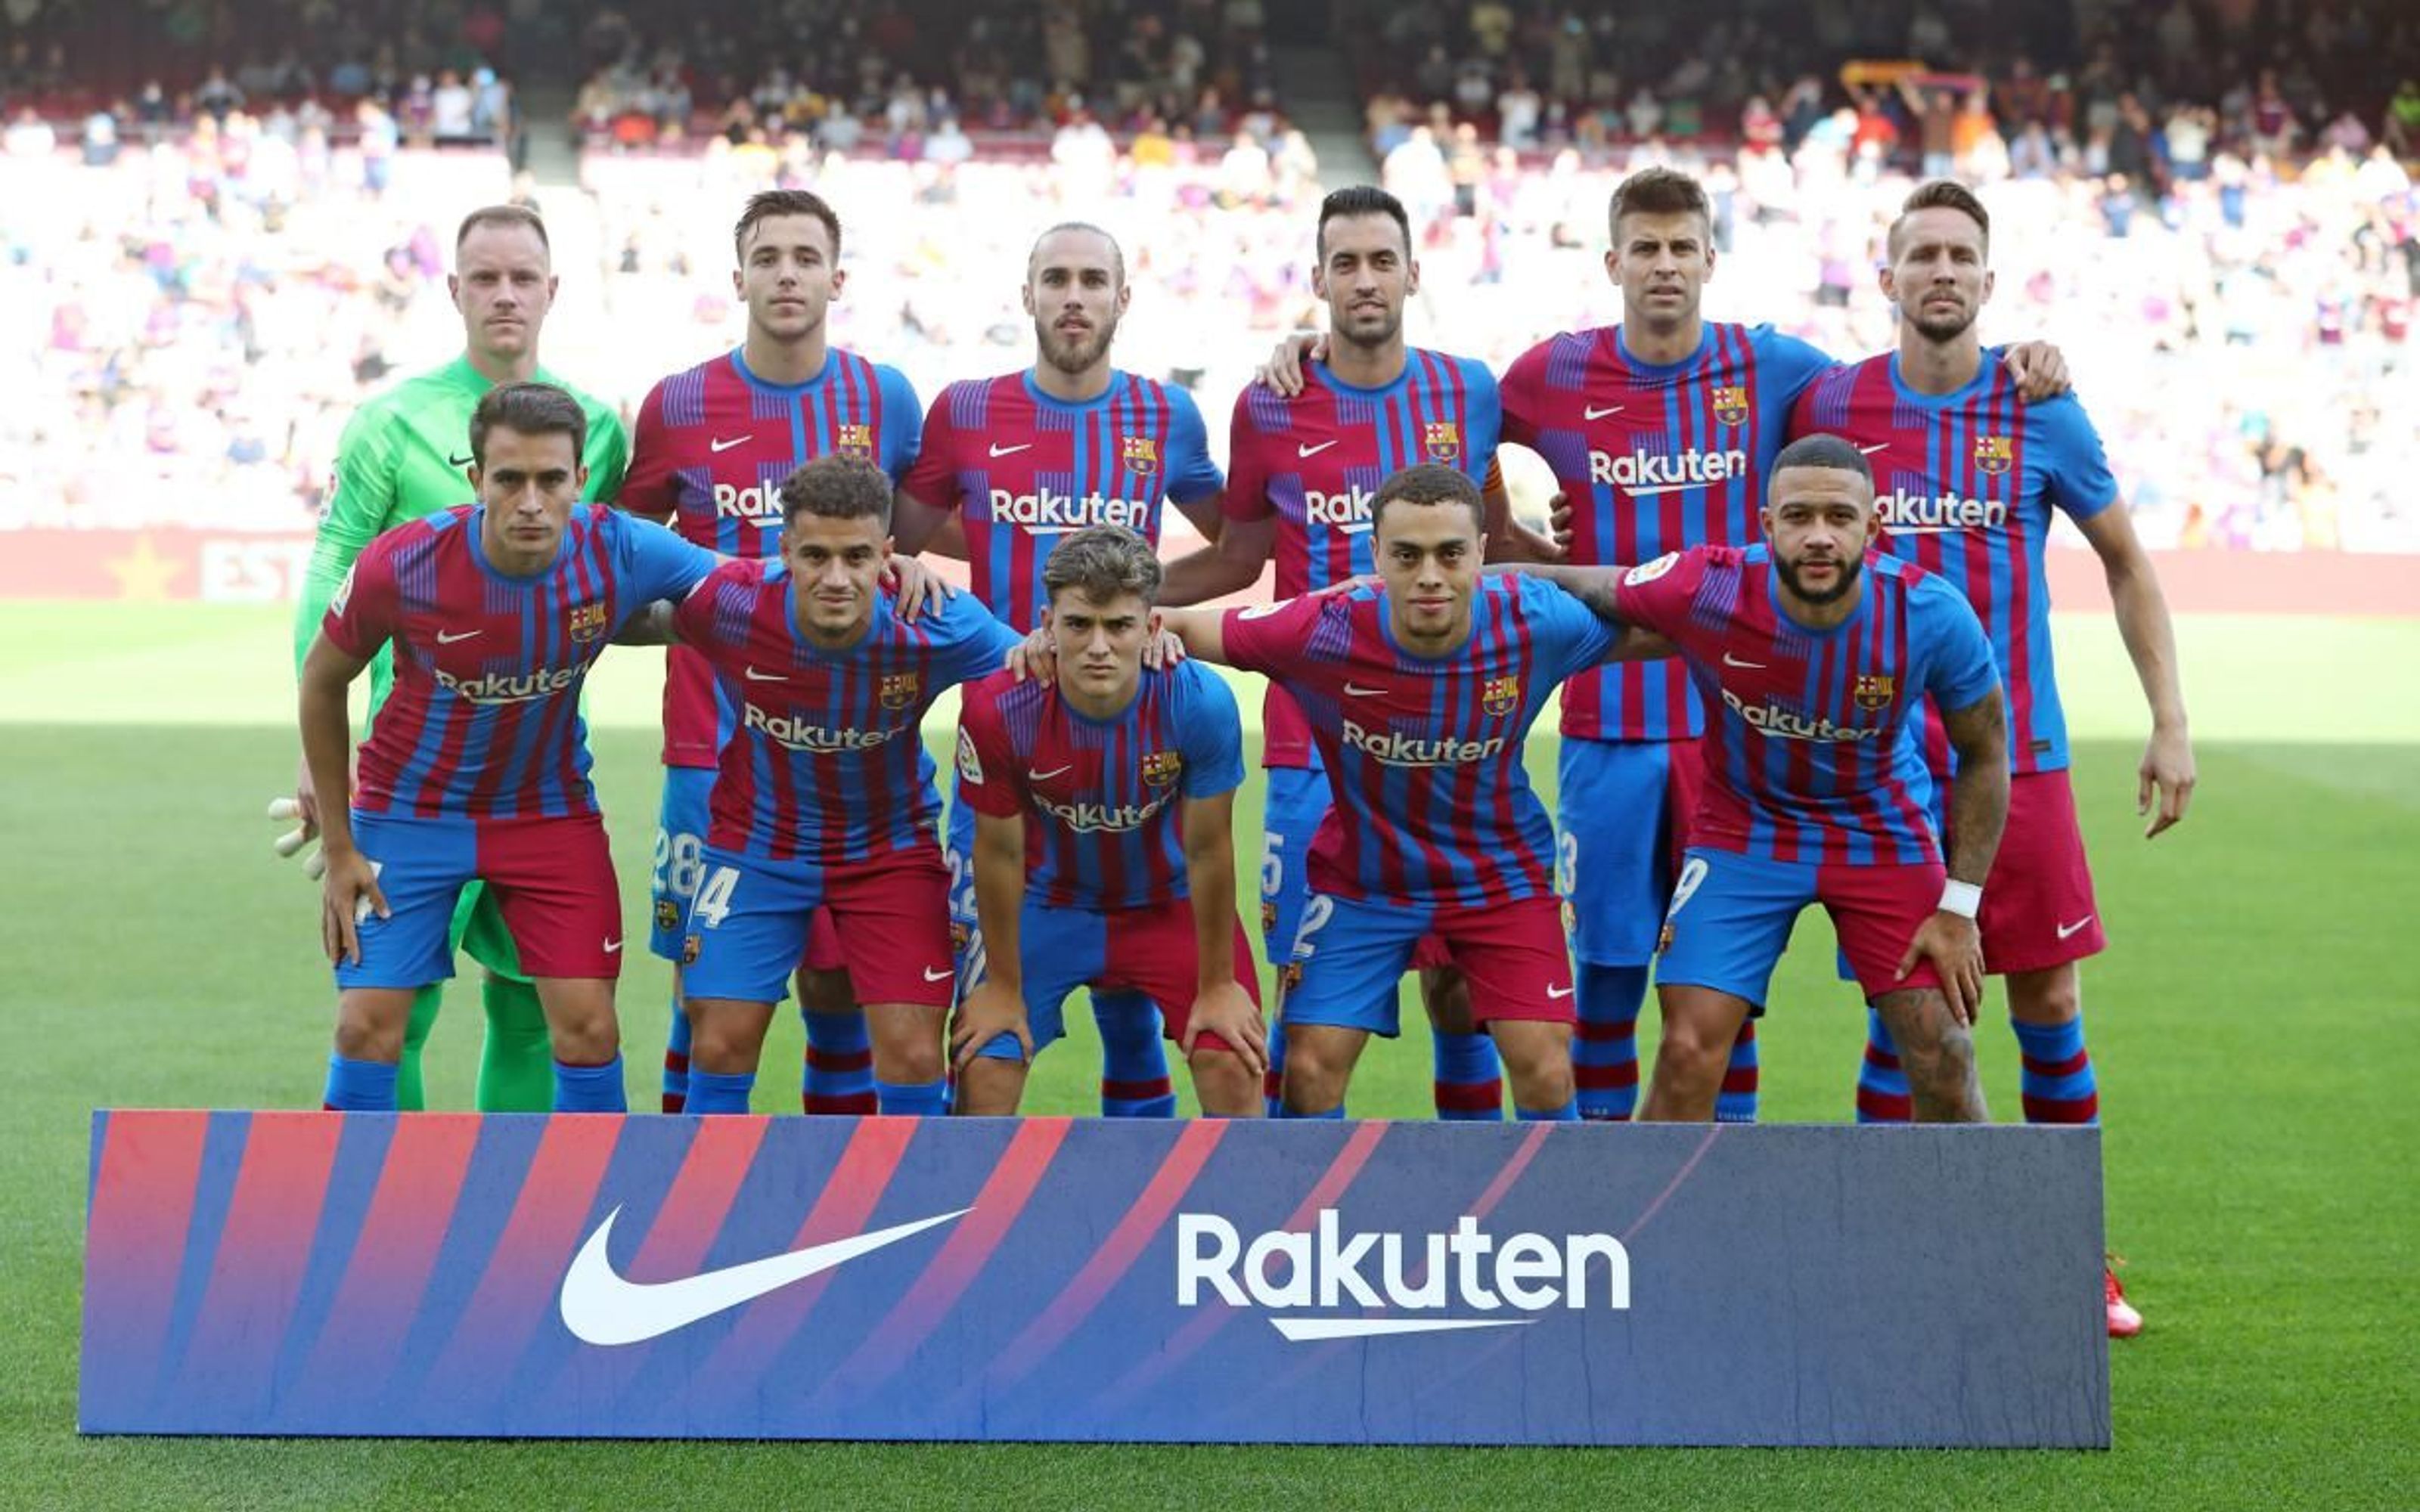 El Barça se suma a la subasta solidaria de camisetas para recaudar fondos  para La Palma